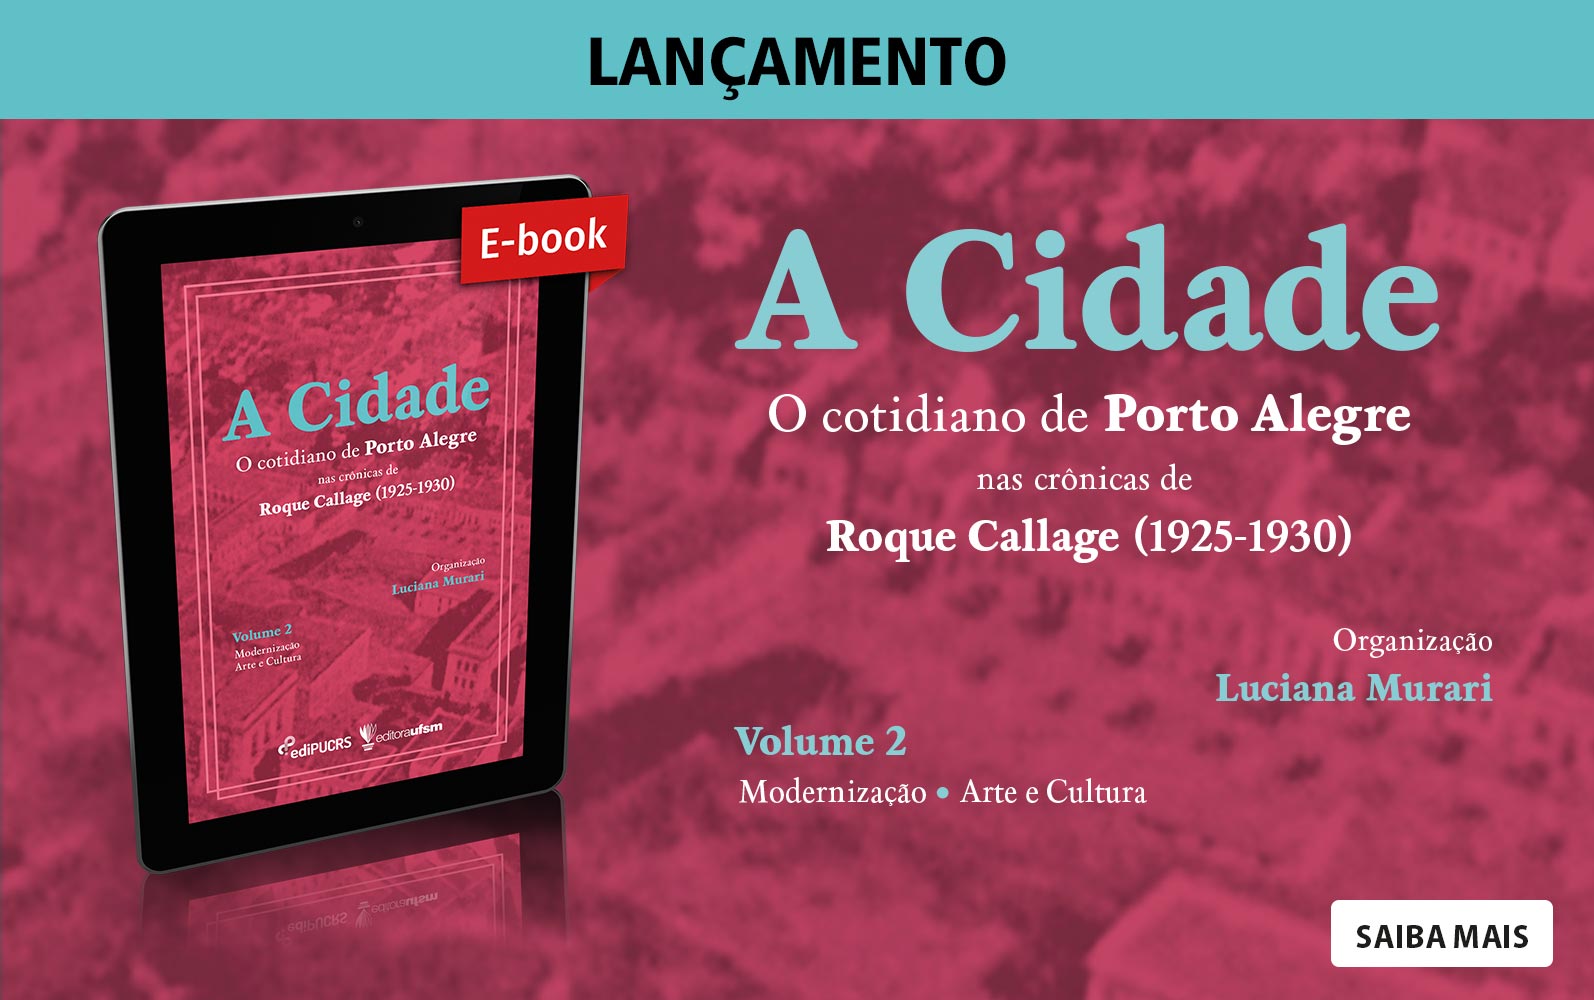 Saiba mais sobre o e-book A cidade: o cotidiano de Porto Alegre nas crônicas de Roque Callage (1925-1930) - Volume 2